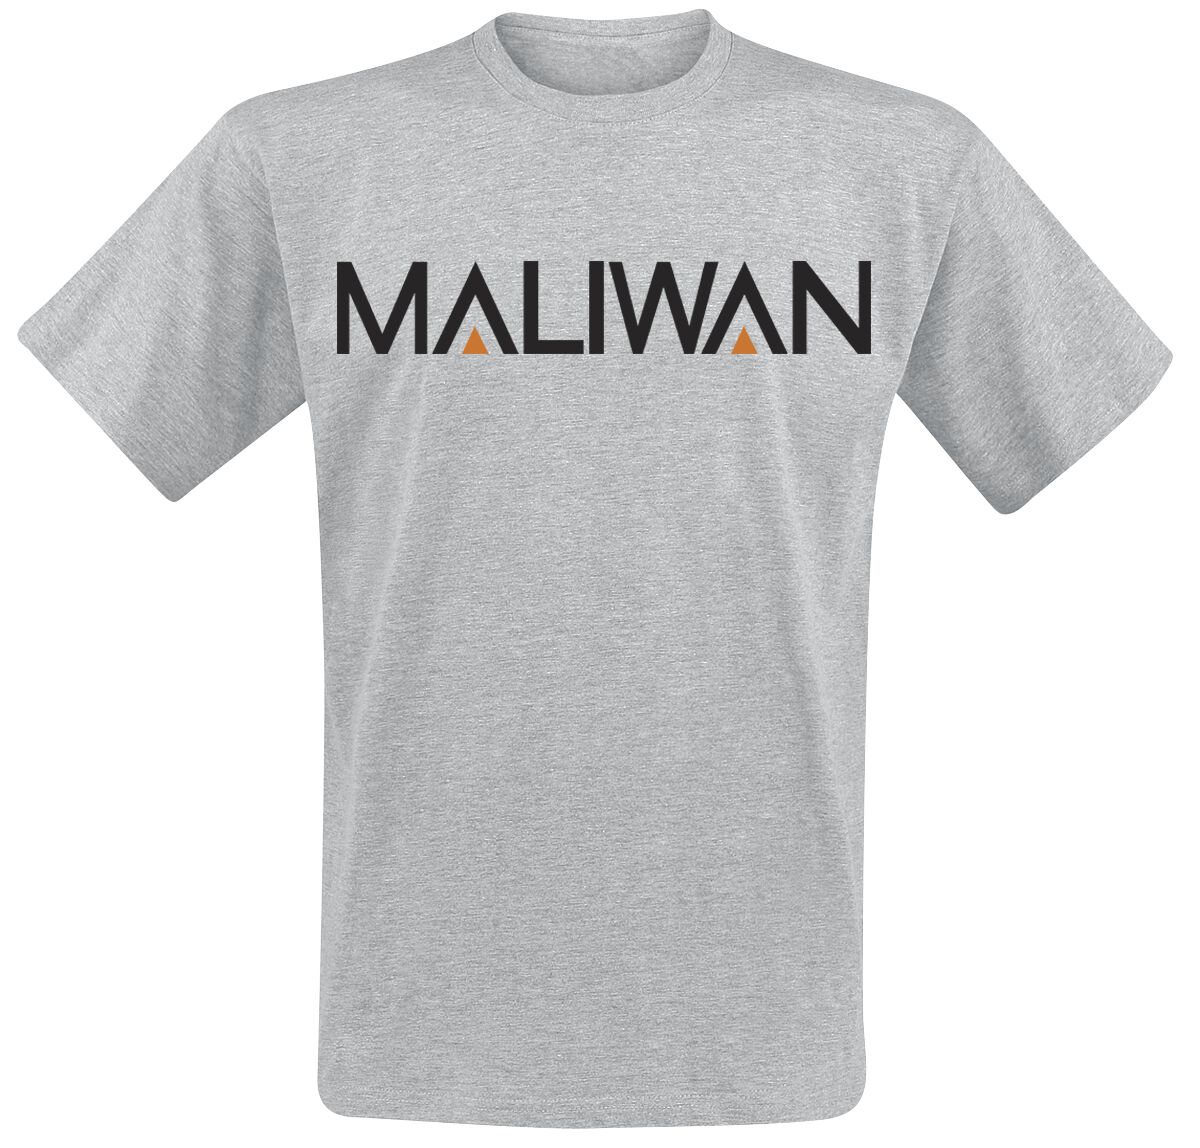 Borderlands - Gaming T-Shirt - 3 - Maliwan - S bis XXL - für Männer - Größe XL - grau meliert  - EMP exklusives Merchandise!